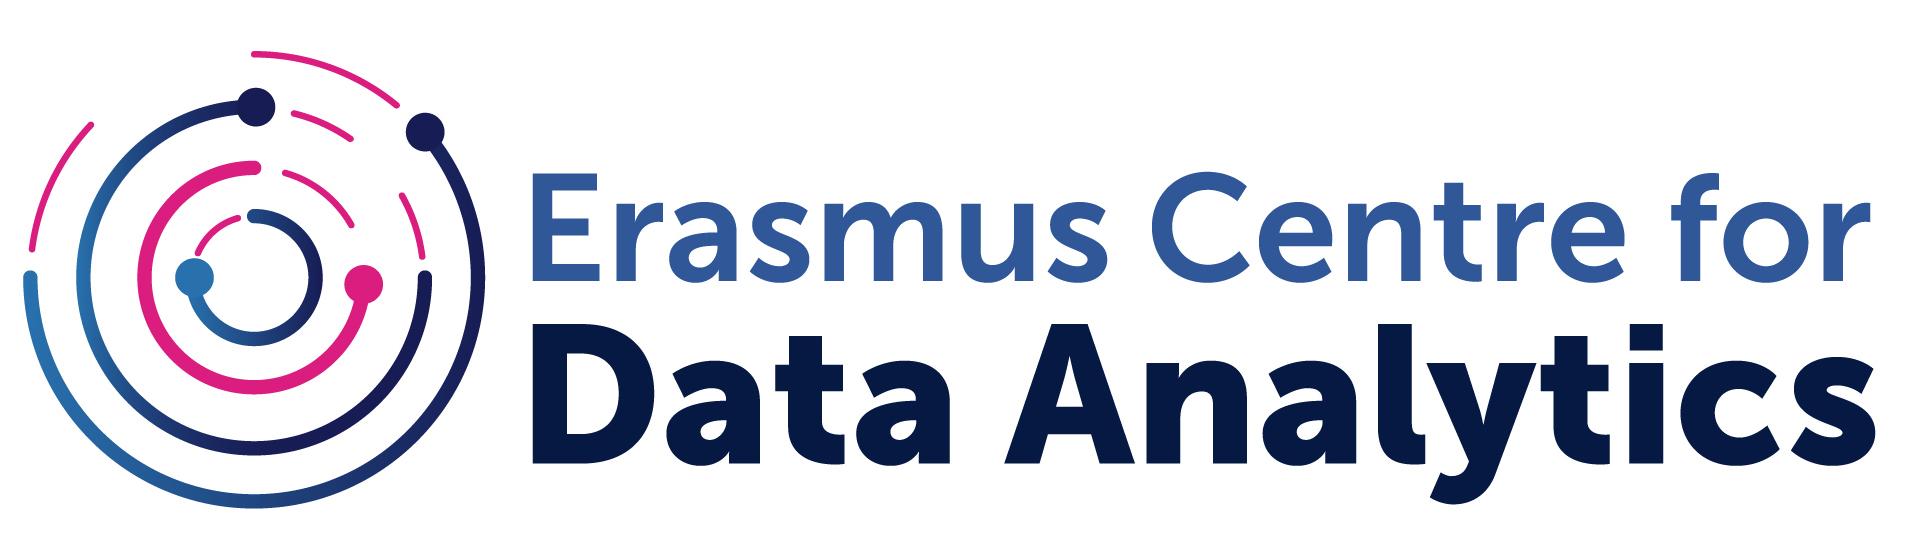 Erasmus Centre for Data Analytics (ECDA)